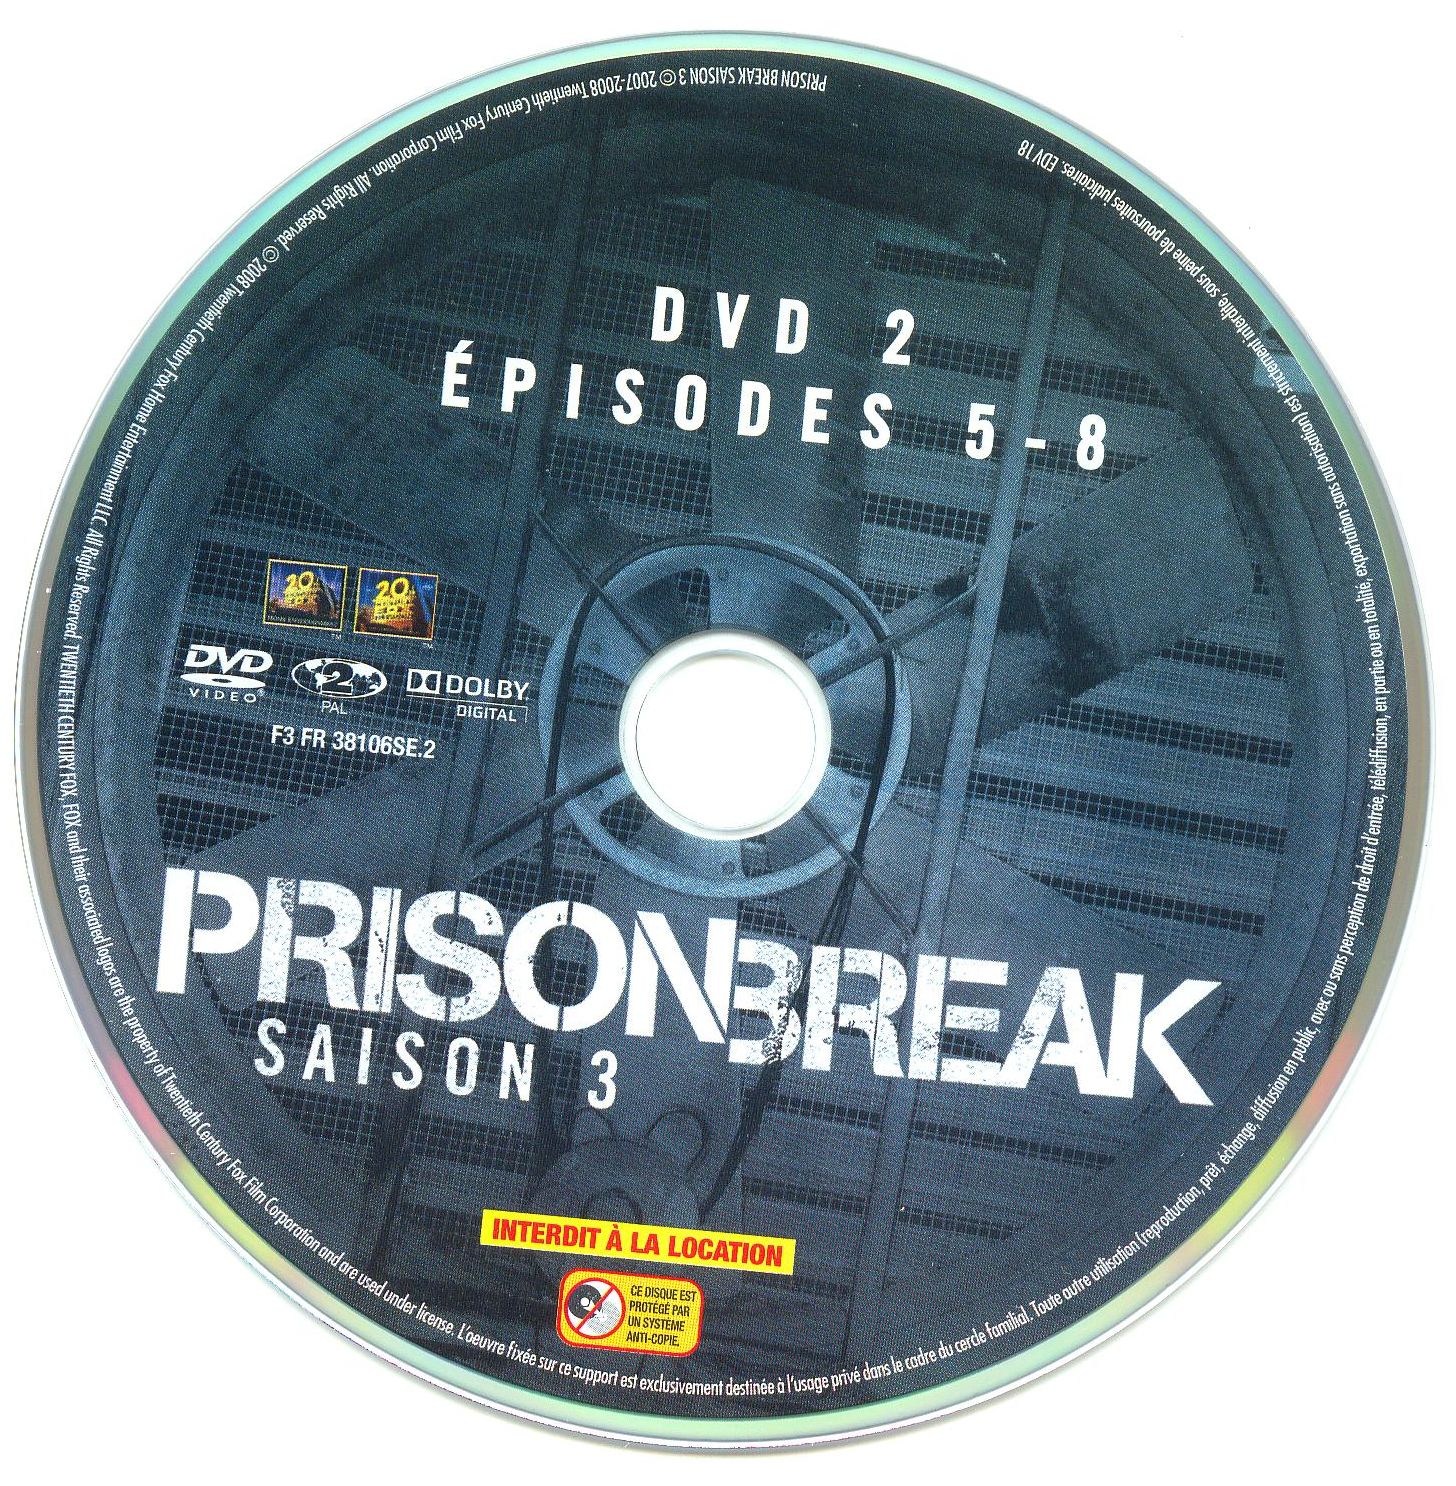 Prison break Saison 3 DVD 2